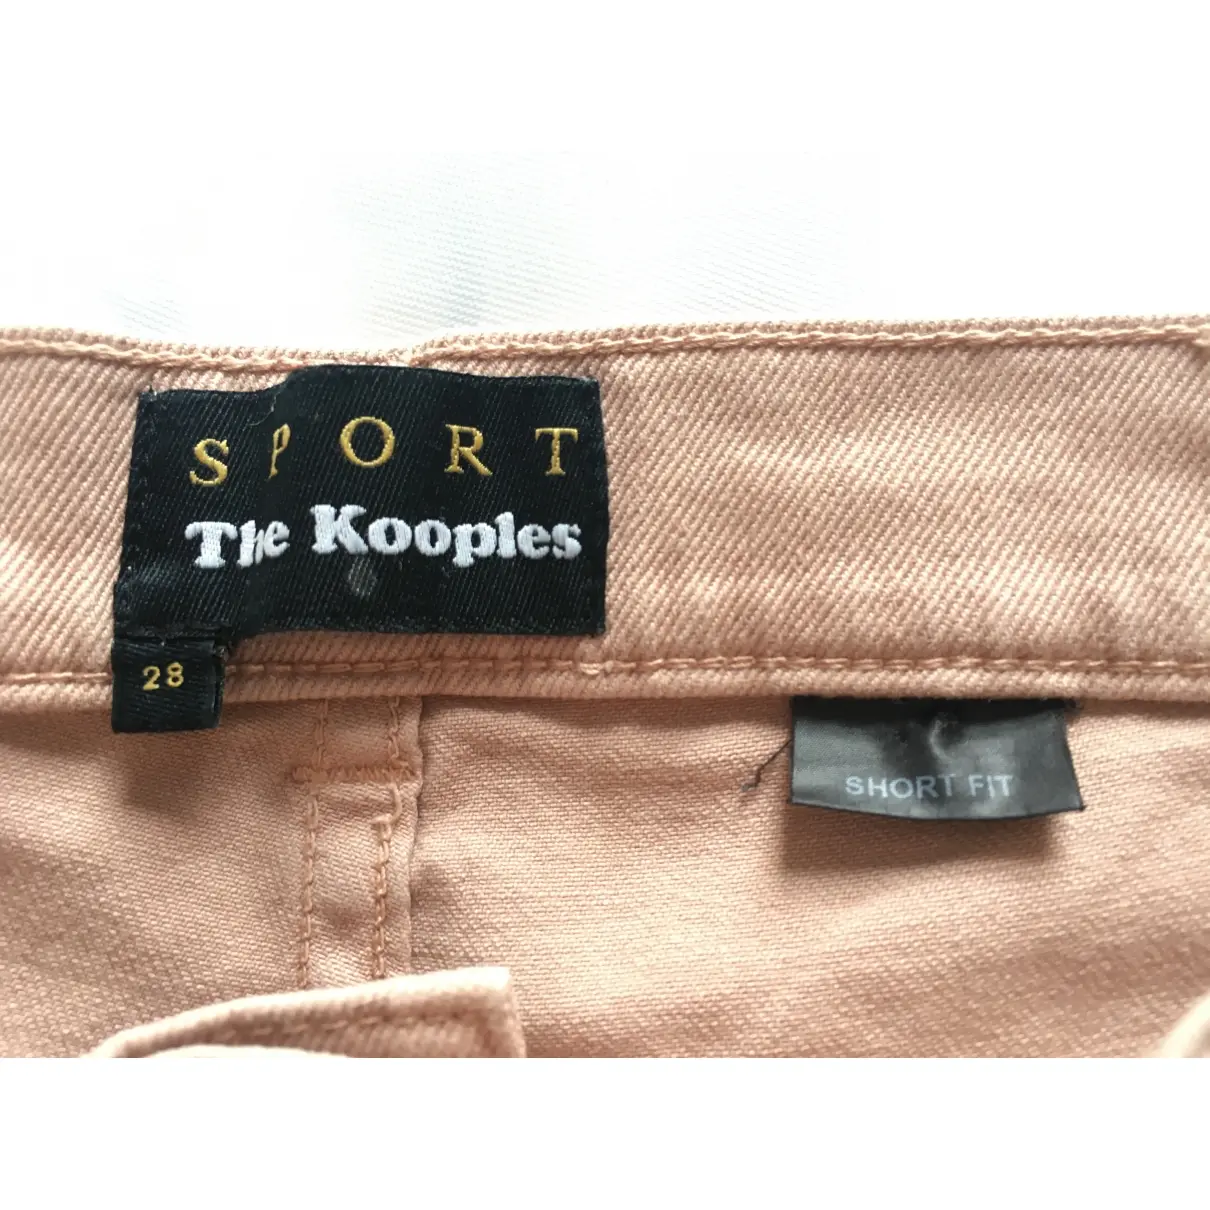 Slim jeans The Kooples